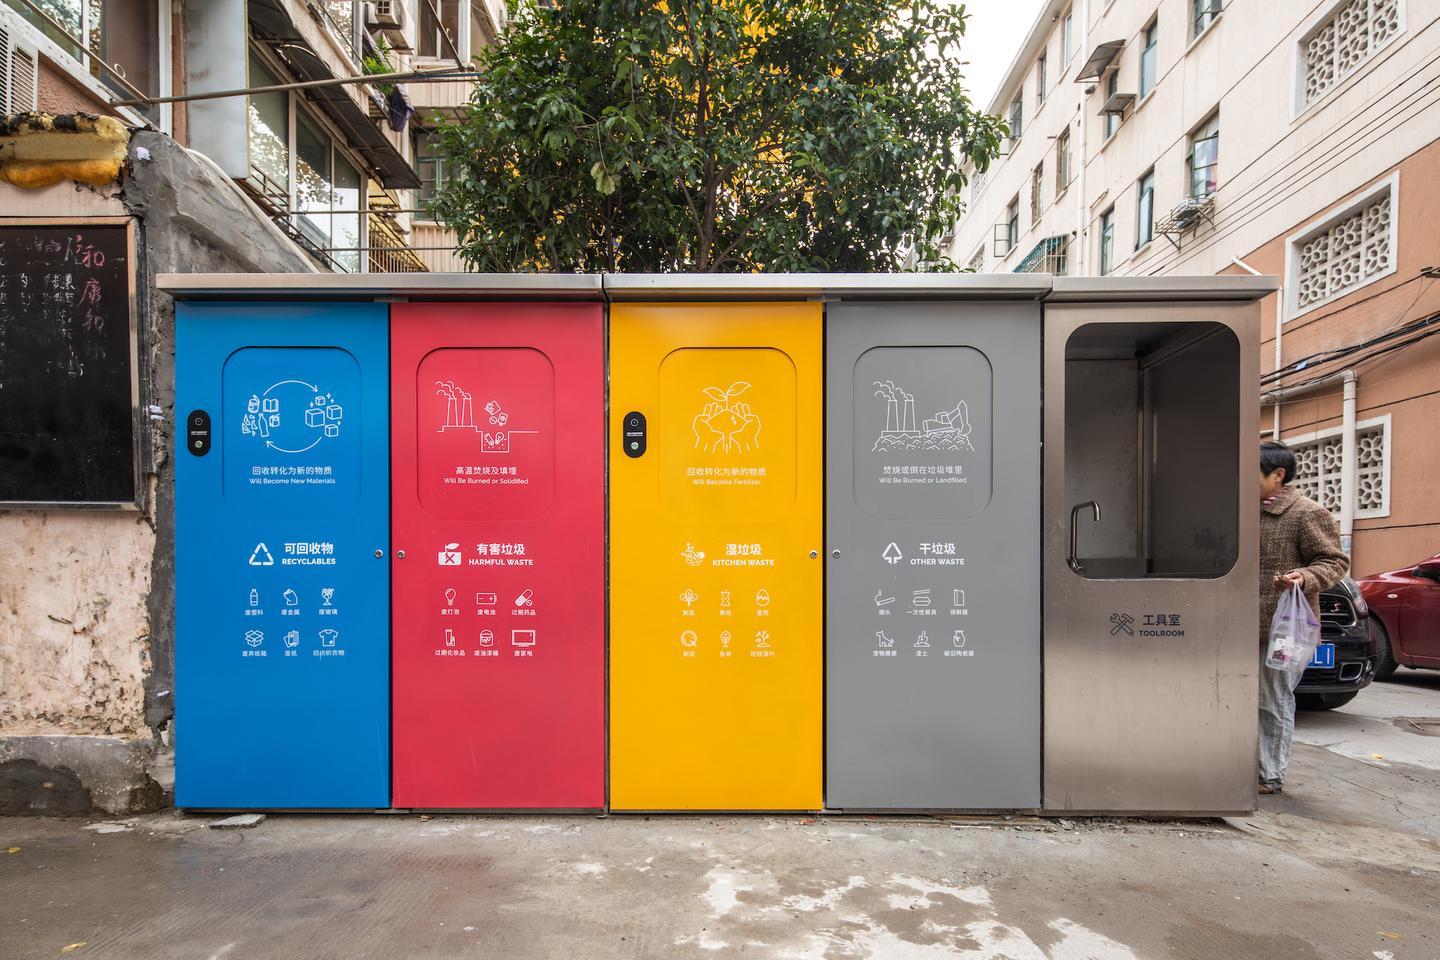 都是设计的错:这个意大利设计师,给中国人做了个分类垃圾厢房设计